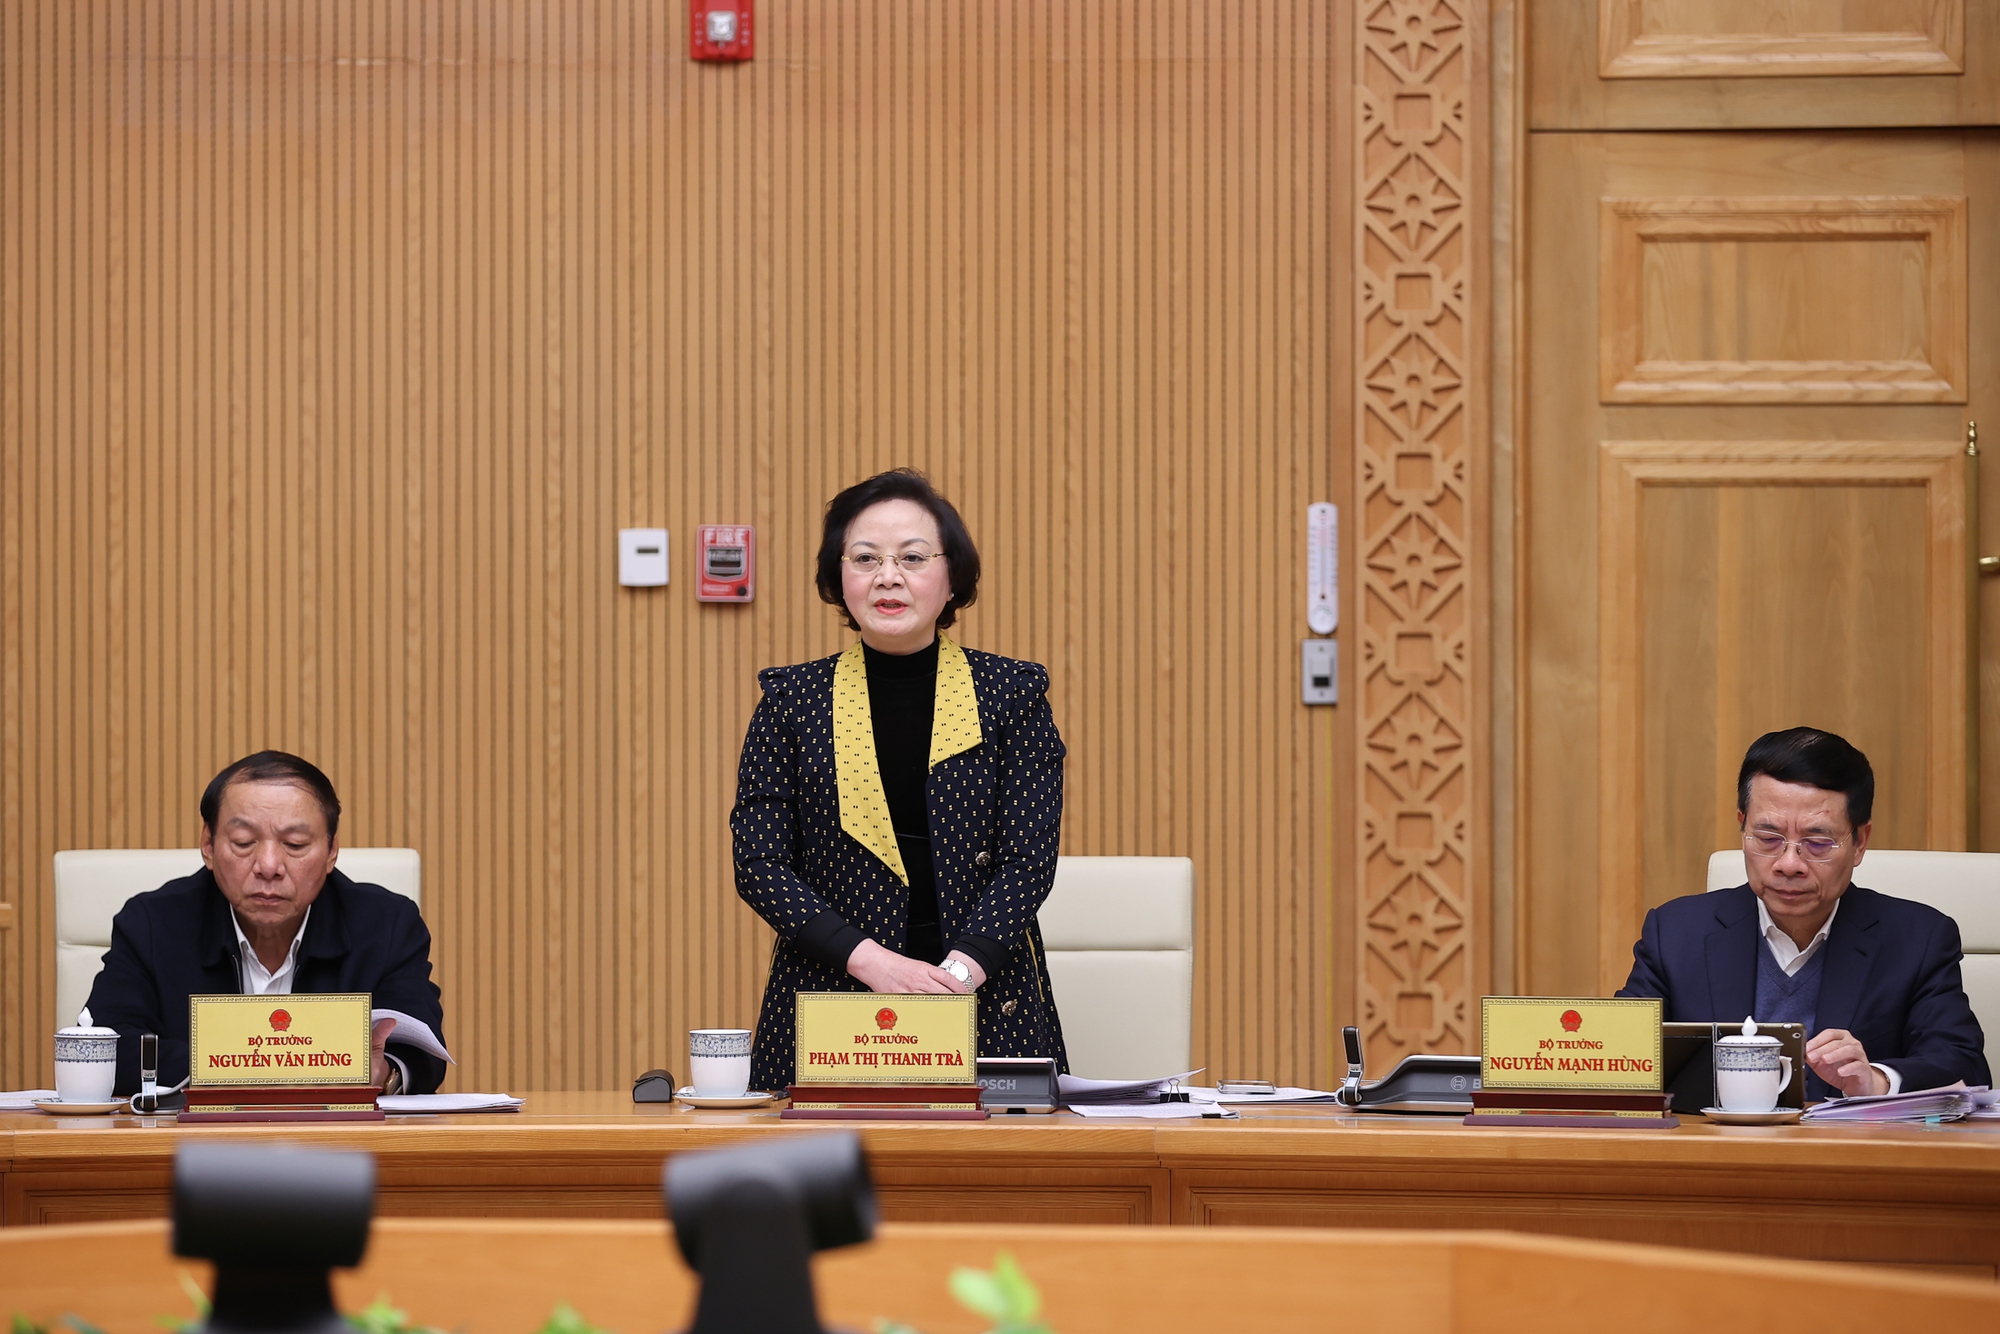 Bộ trưởng Bộ Nội vụ Phạm Thị Thanh Trà phát biểu thảo luận tại phiên họp - Ảnh: VGP/Nhật Bắc